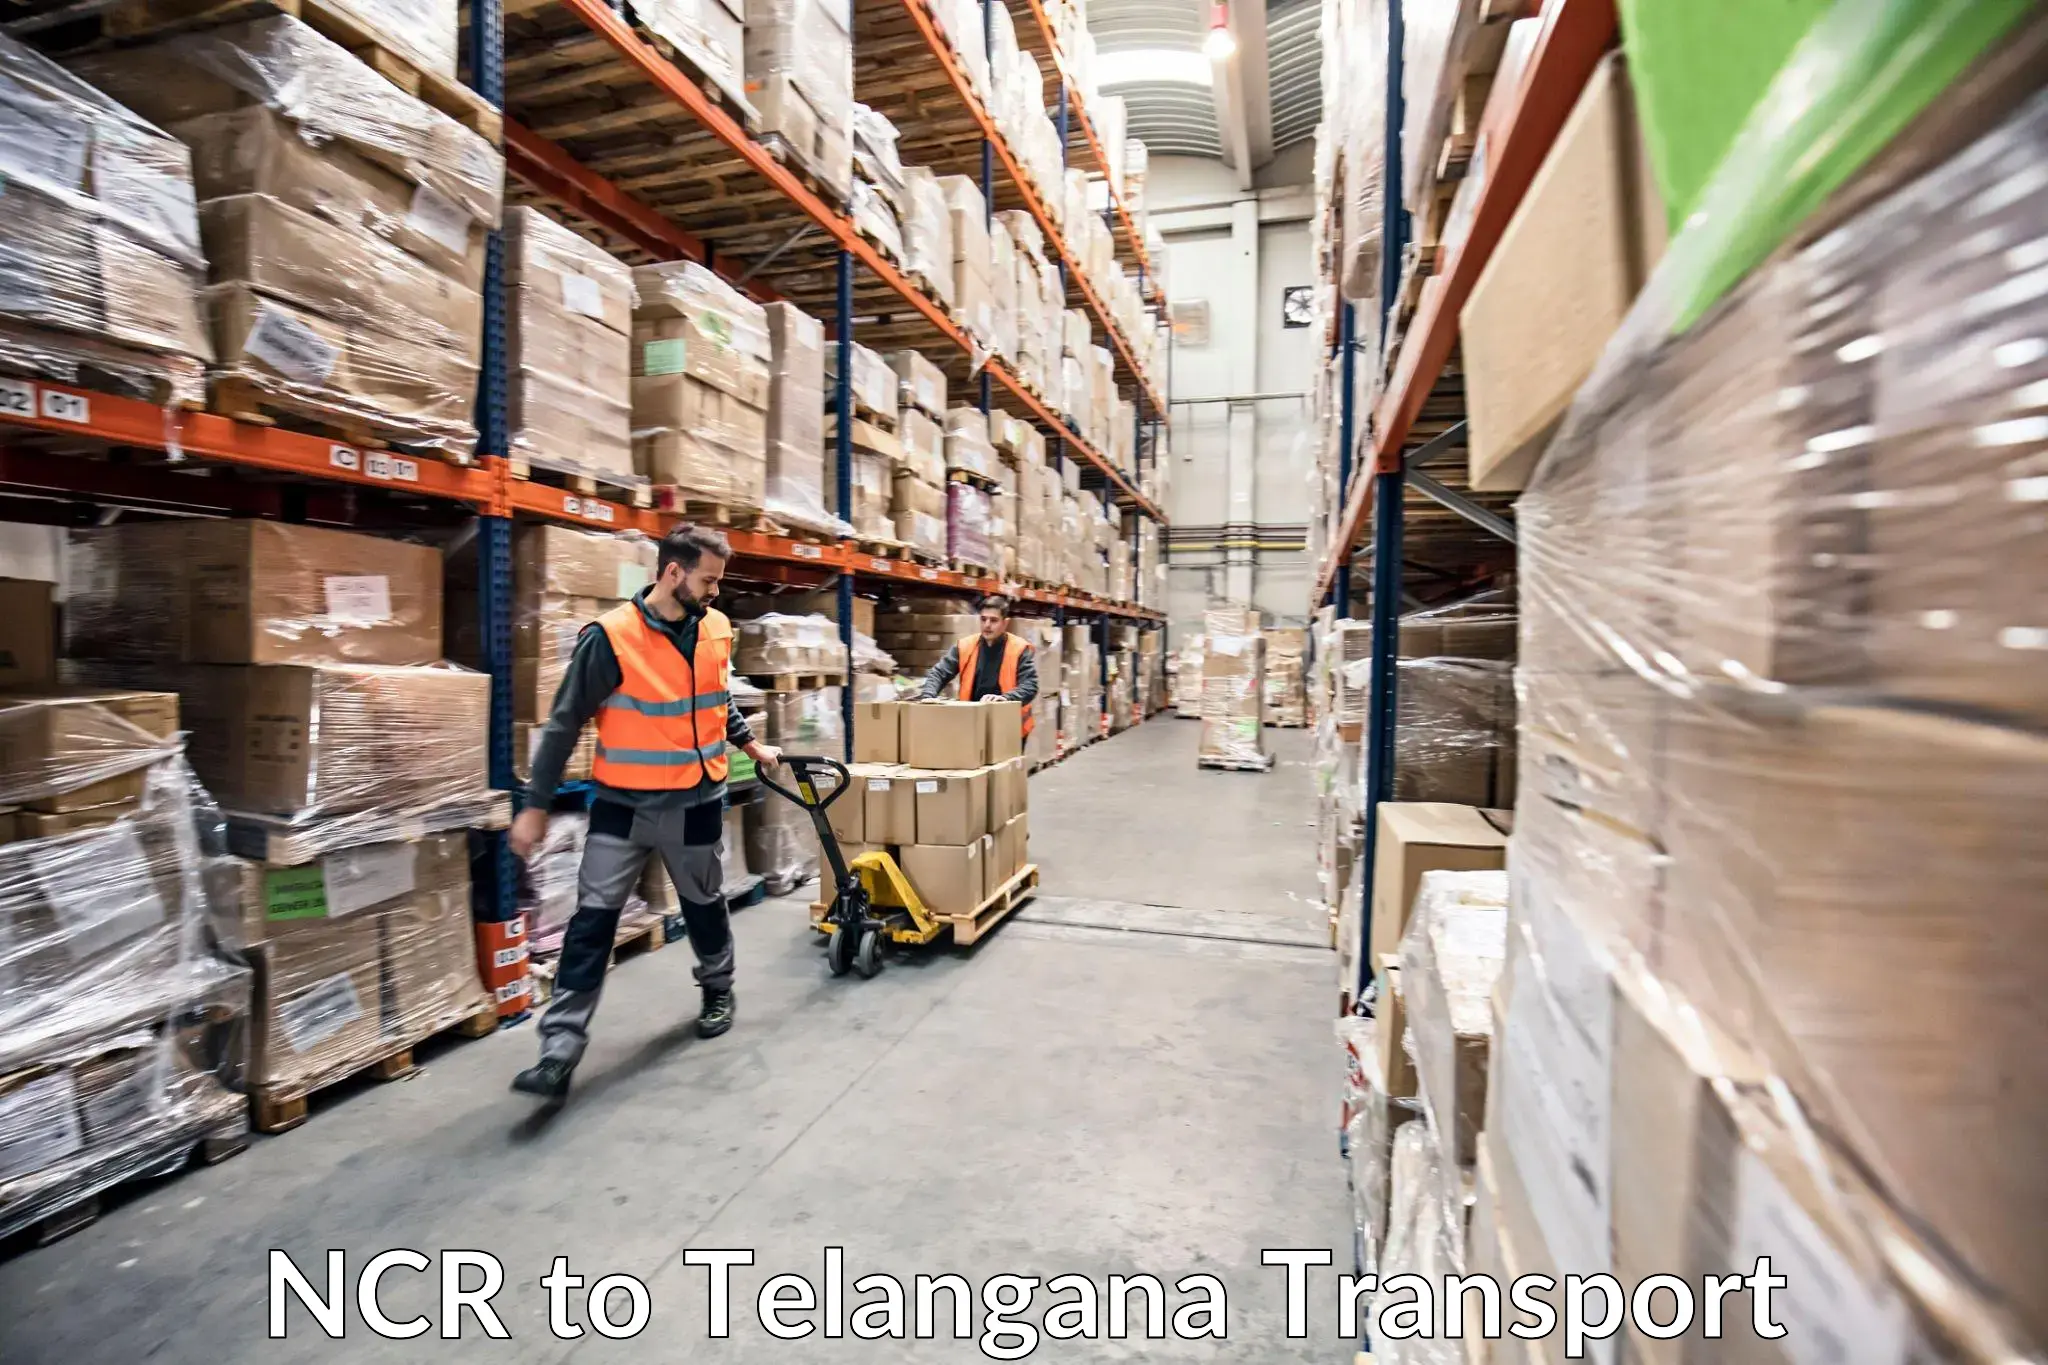 Bike shipping service NCR to Balanagar